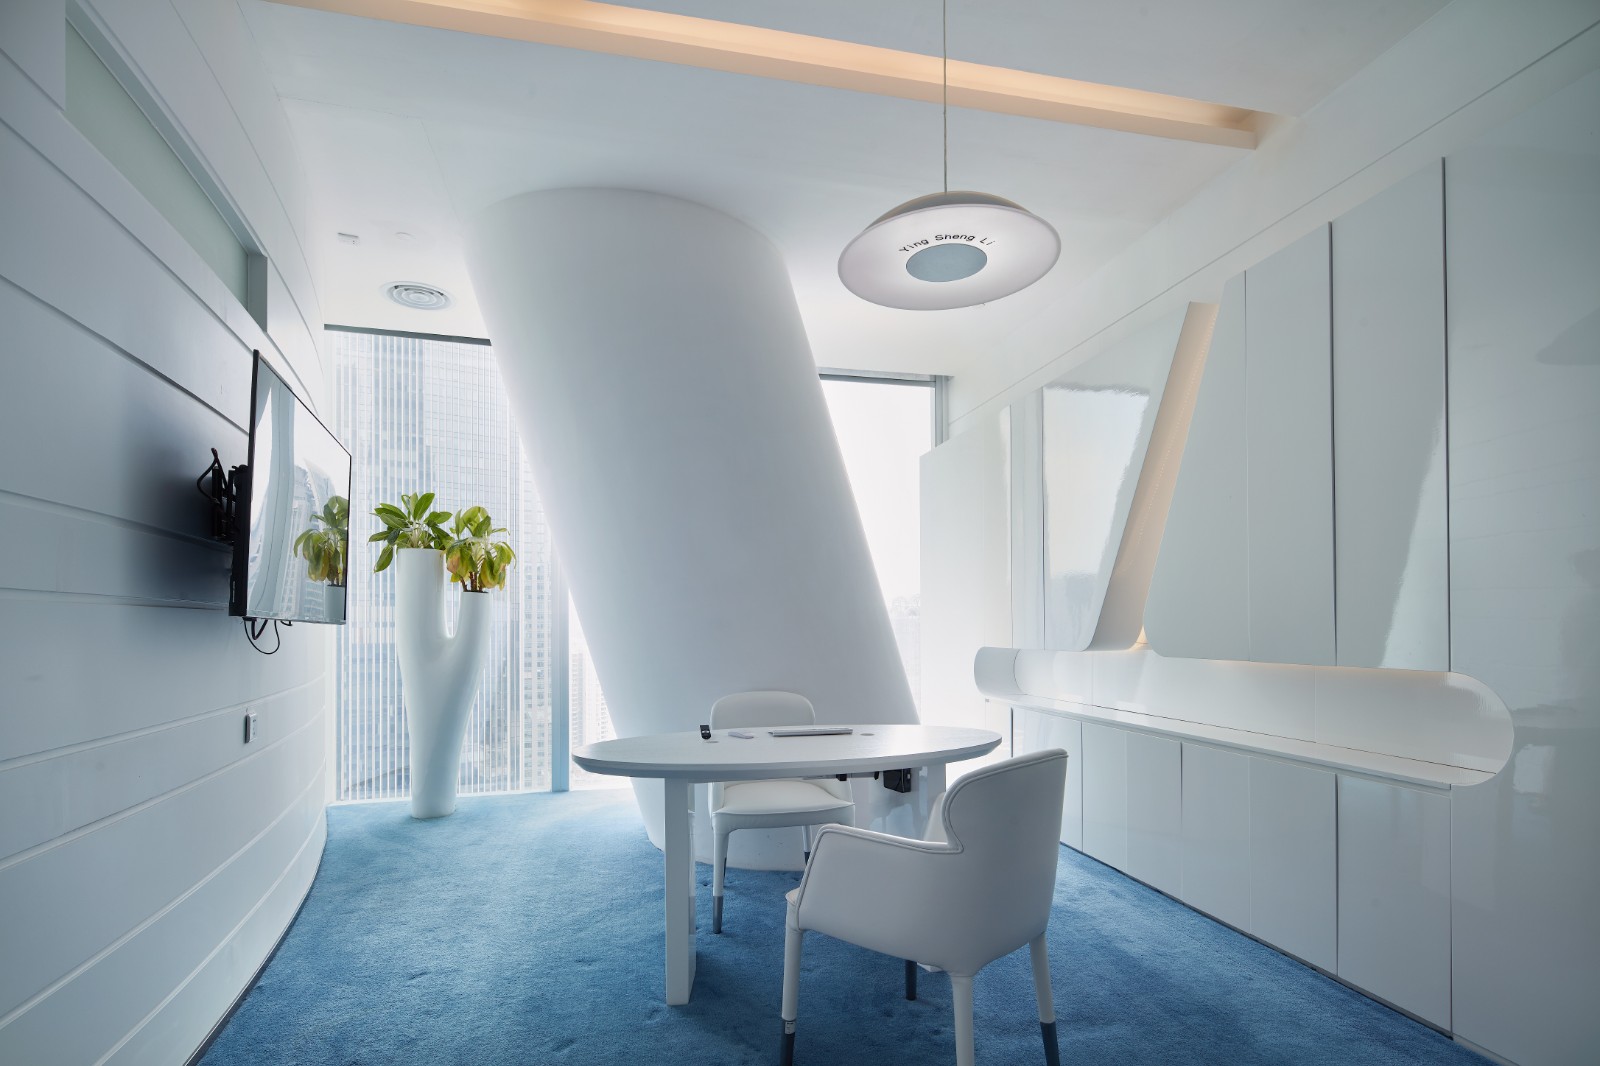 充满现代科技感的新生态办公空间·广州-盈生力总部办公室 | 林福星设计案例